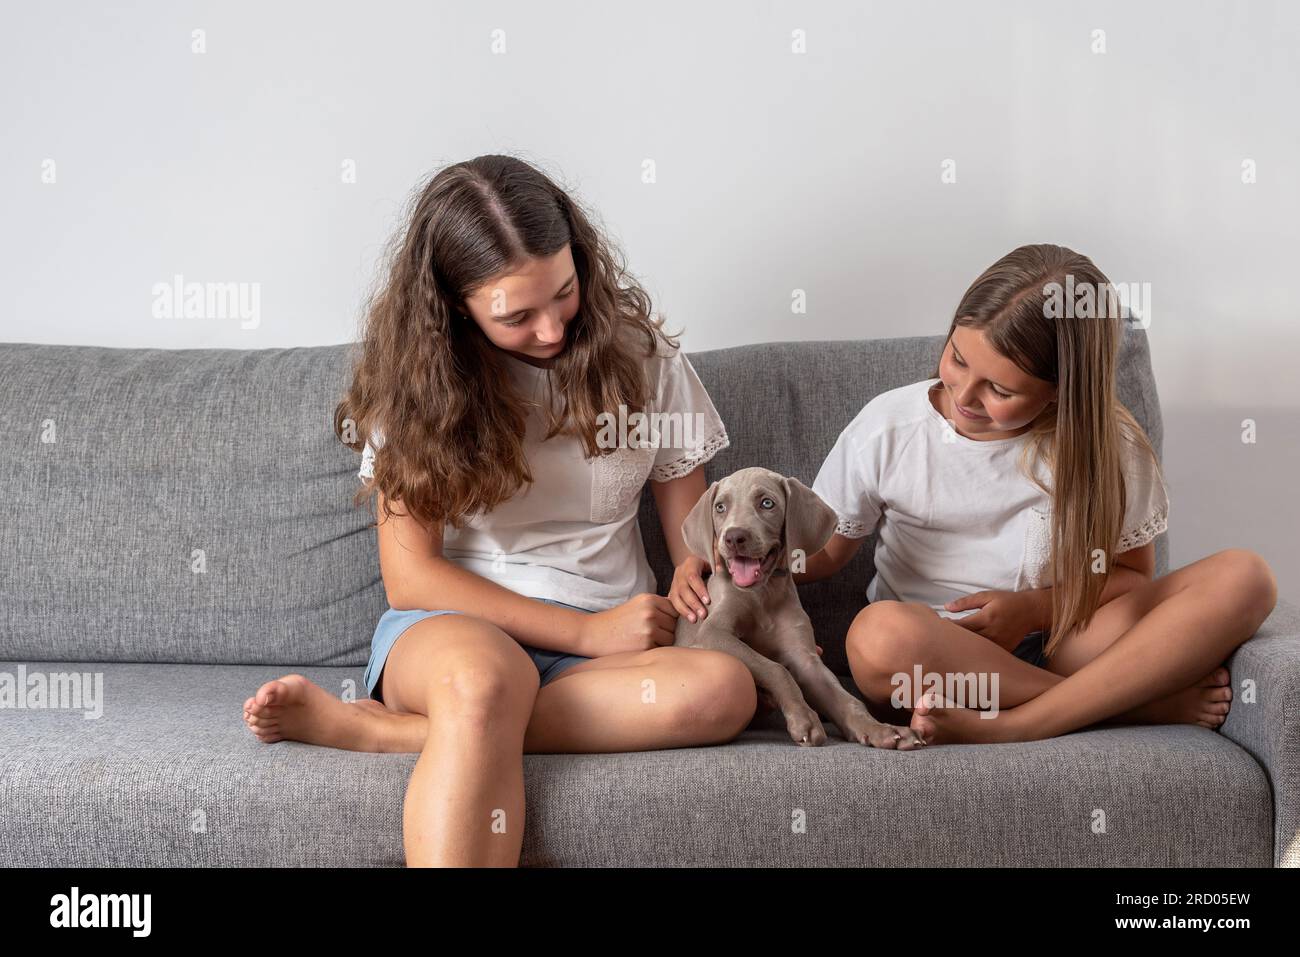 Niñas sentadas en un sofá acariciando a su cachorro weimaraner. Amor por los animales. Los perros ayudan a los niños a crecer y desarrollarse. Razas de perros. Foto de stock